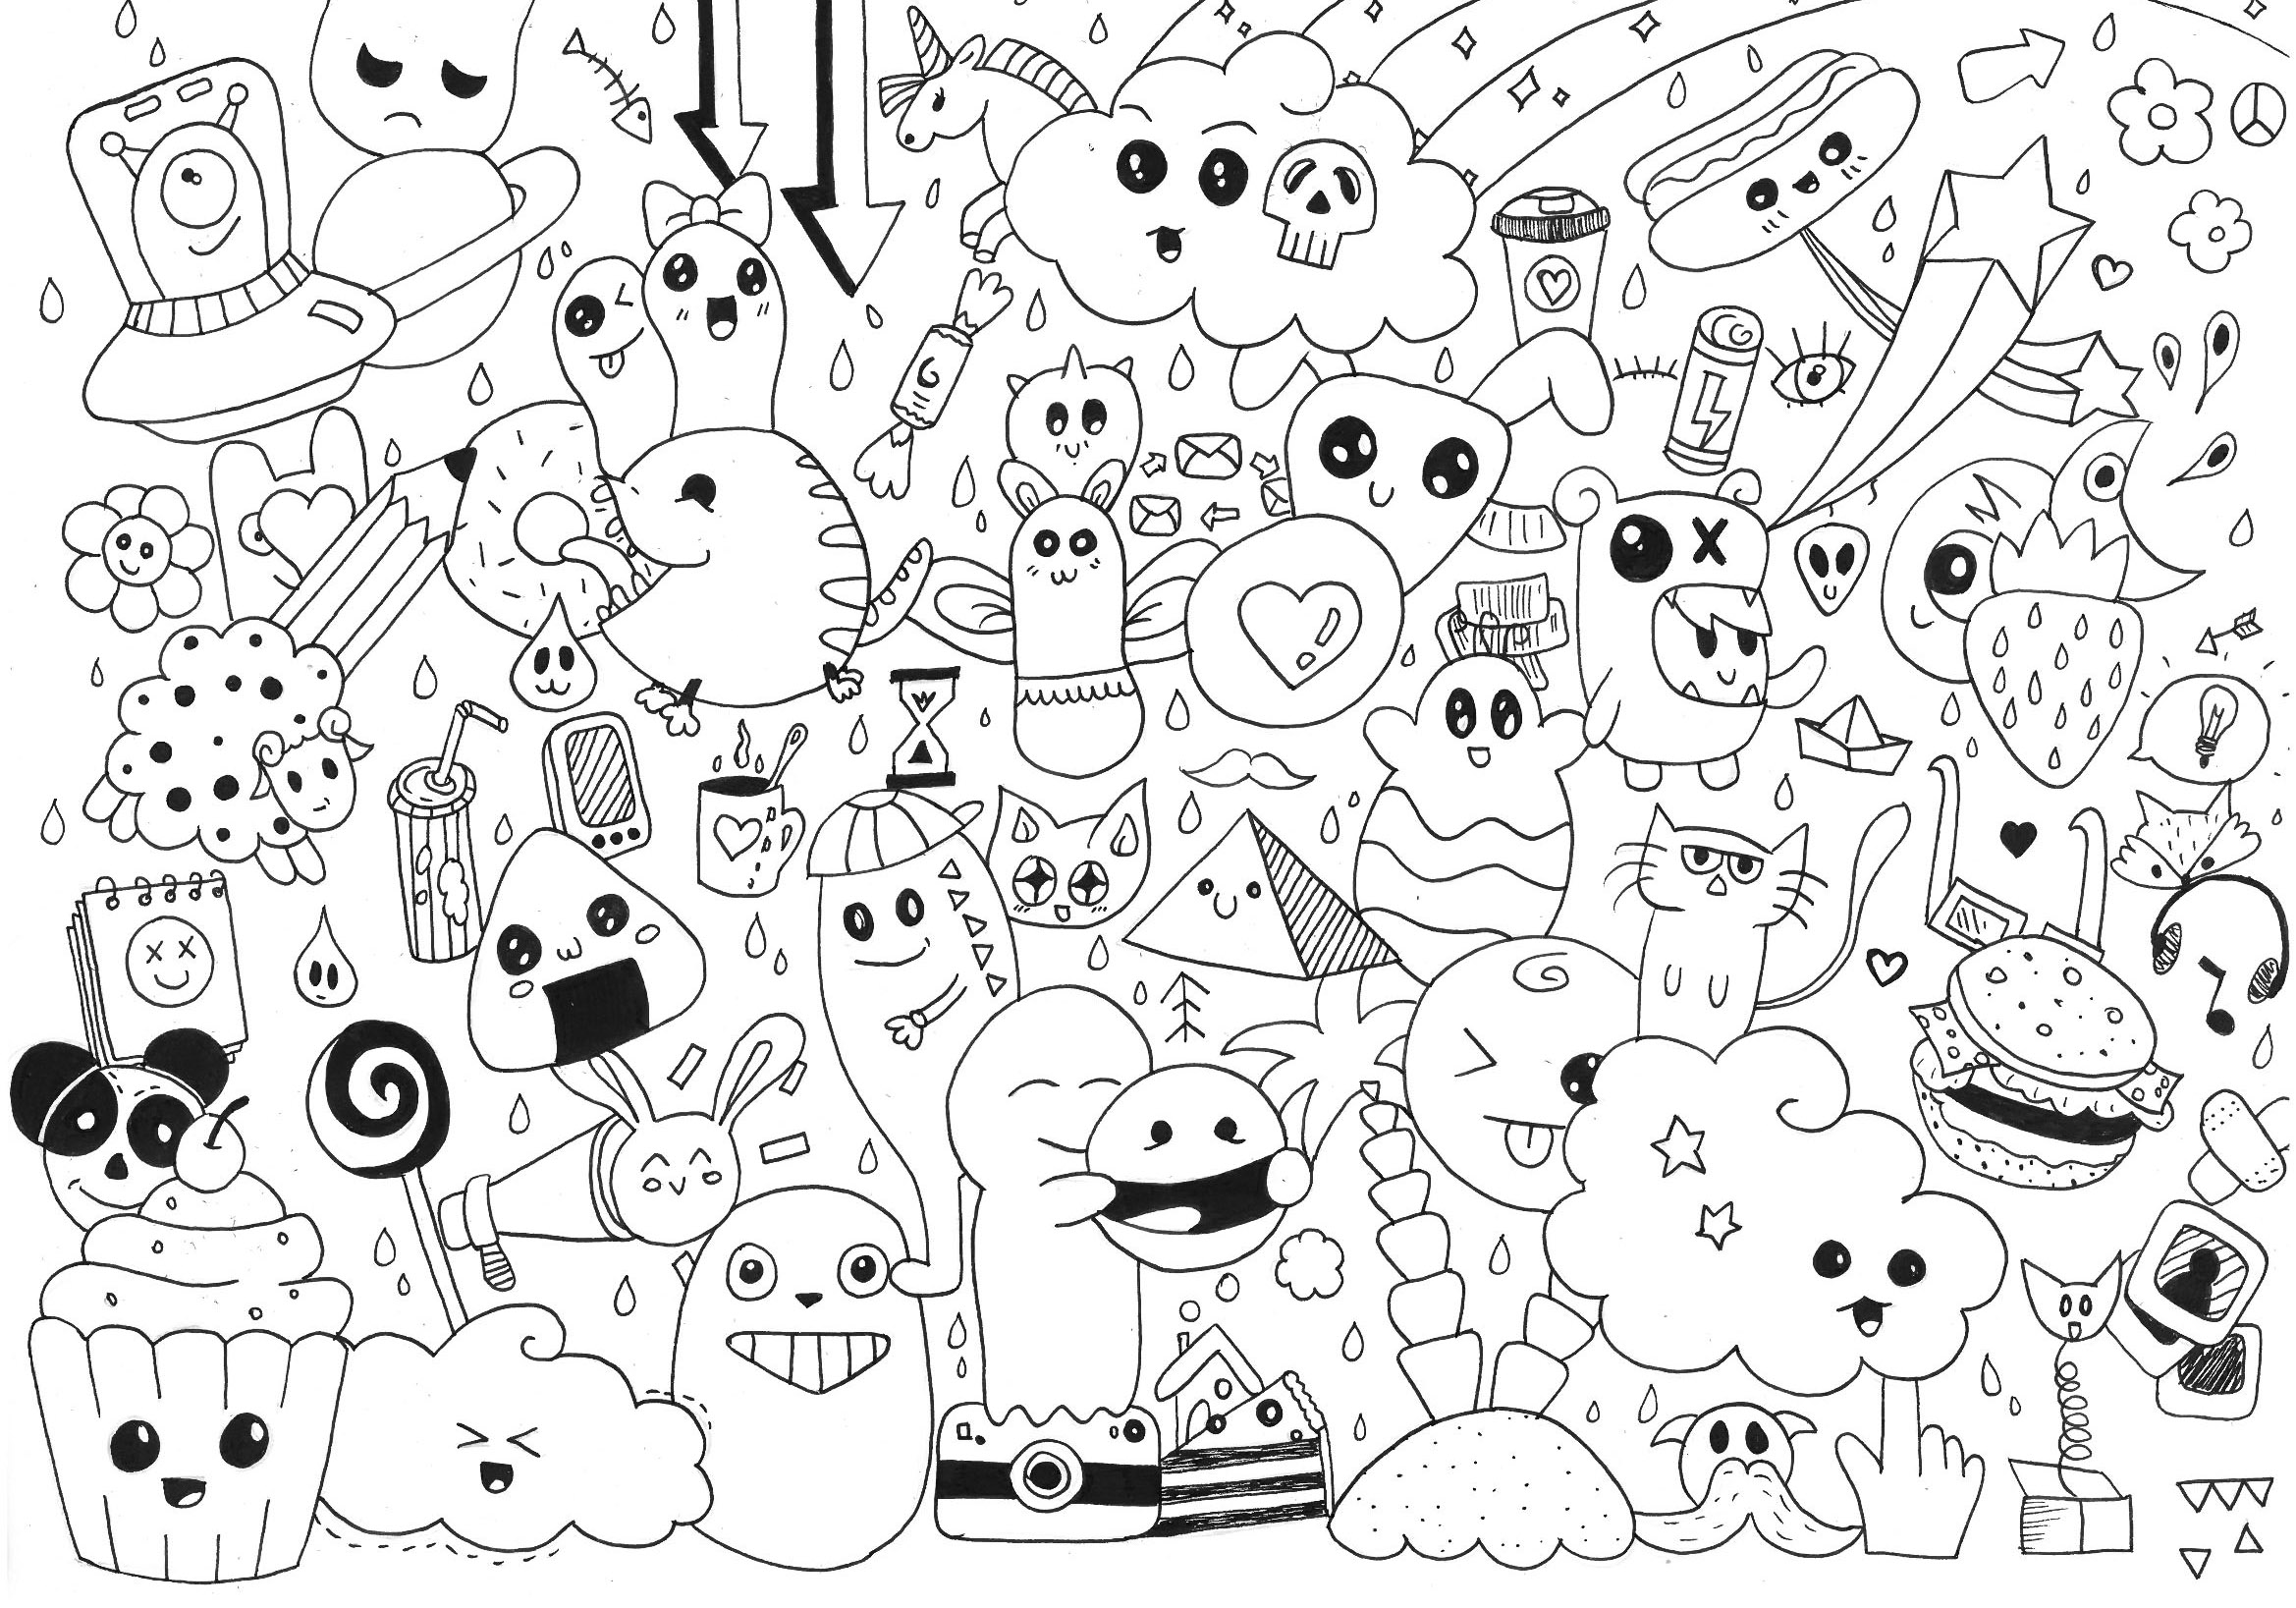 doodle-art-for-kids-sabadoodle